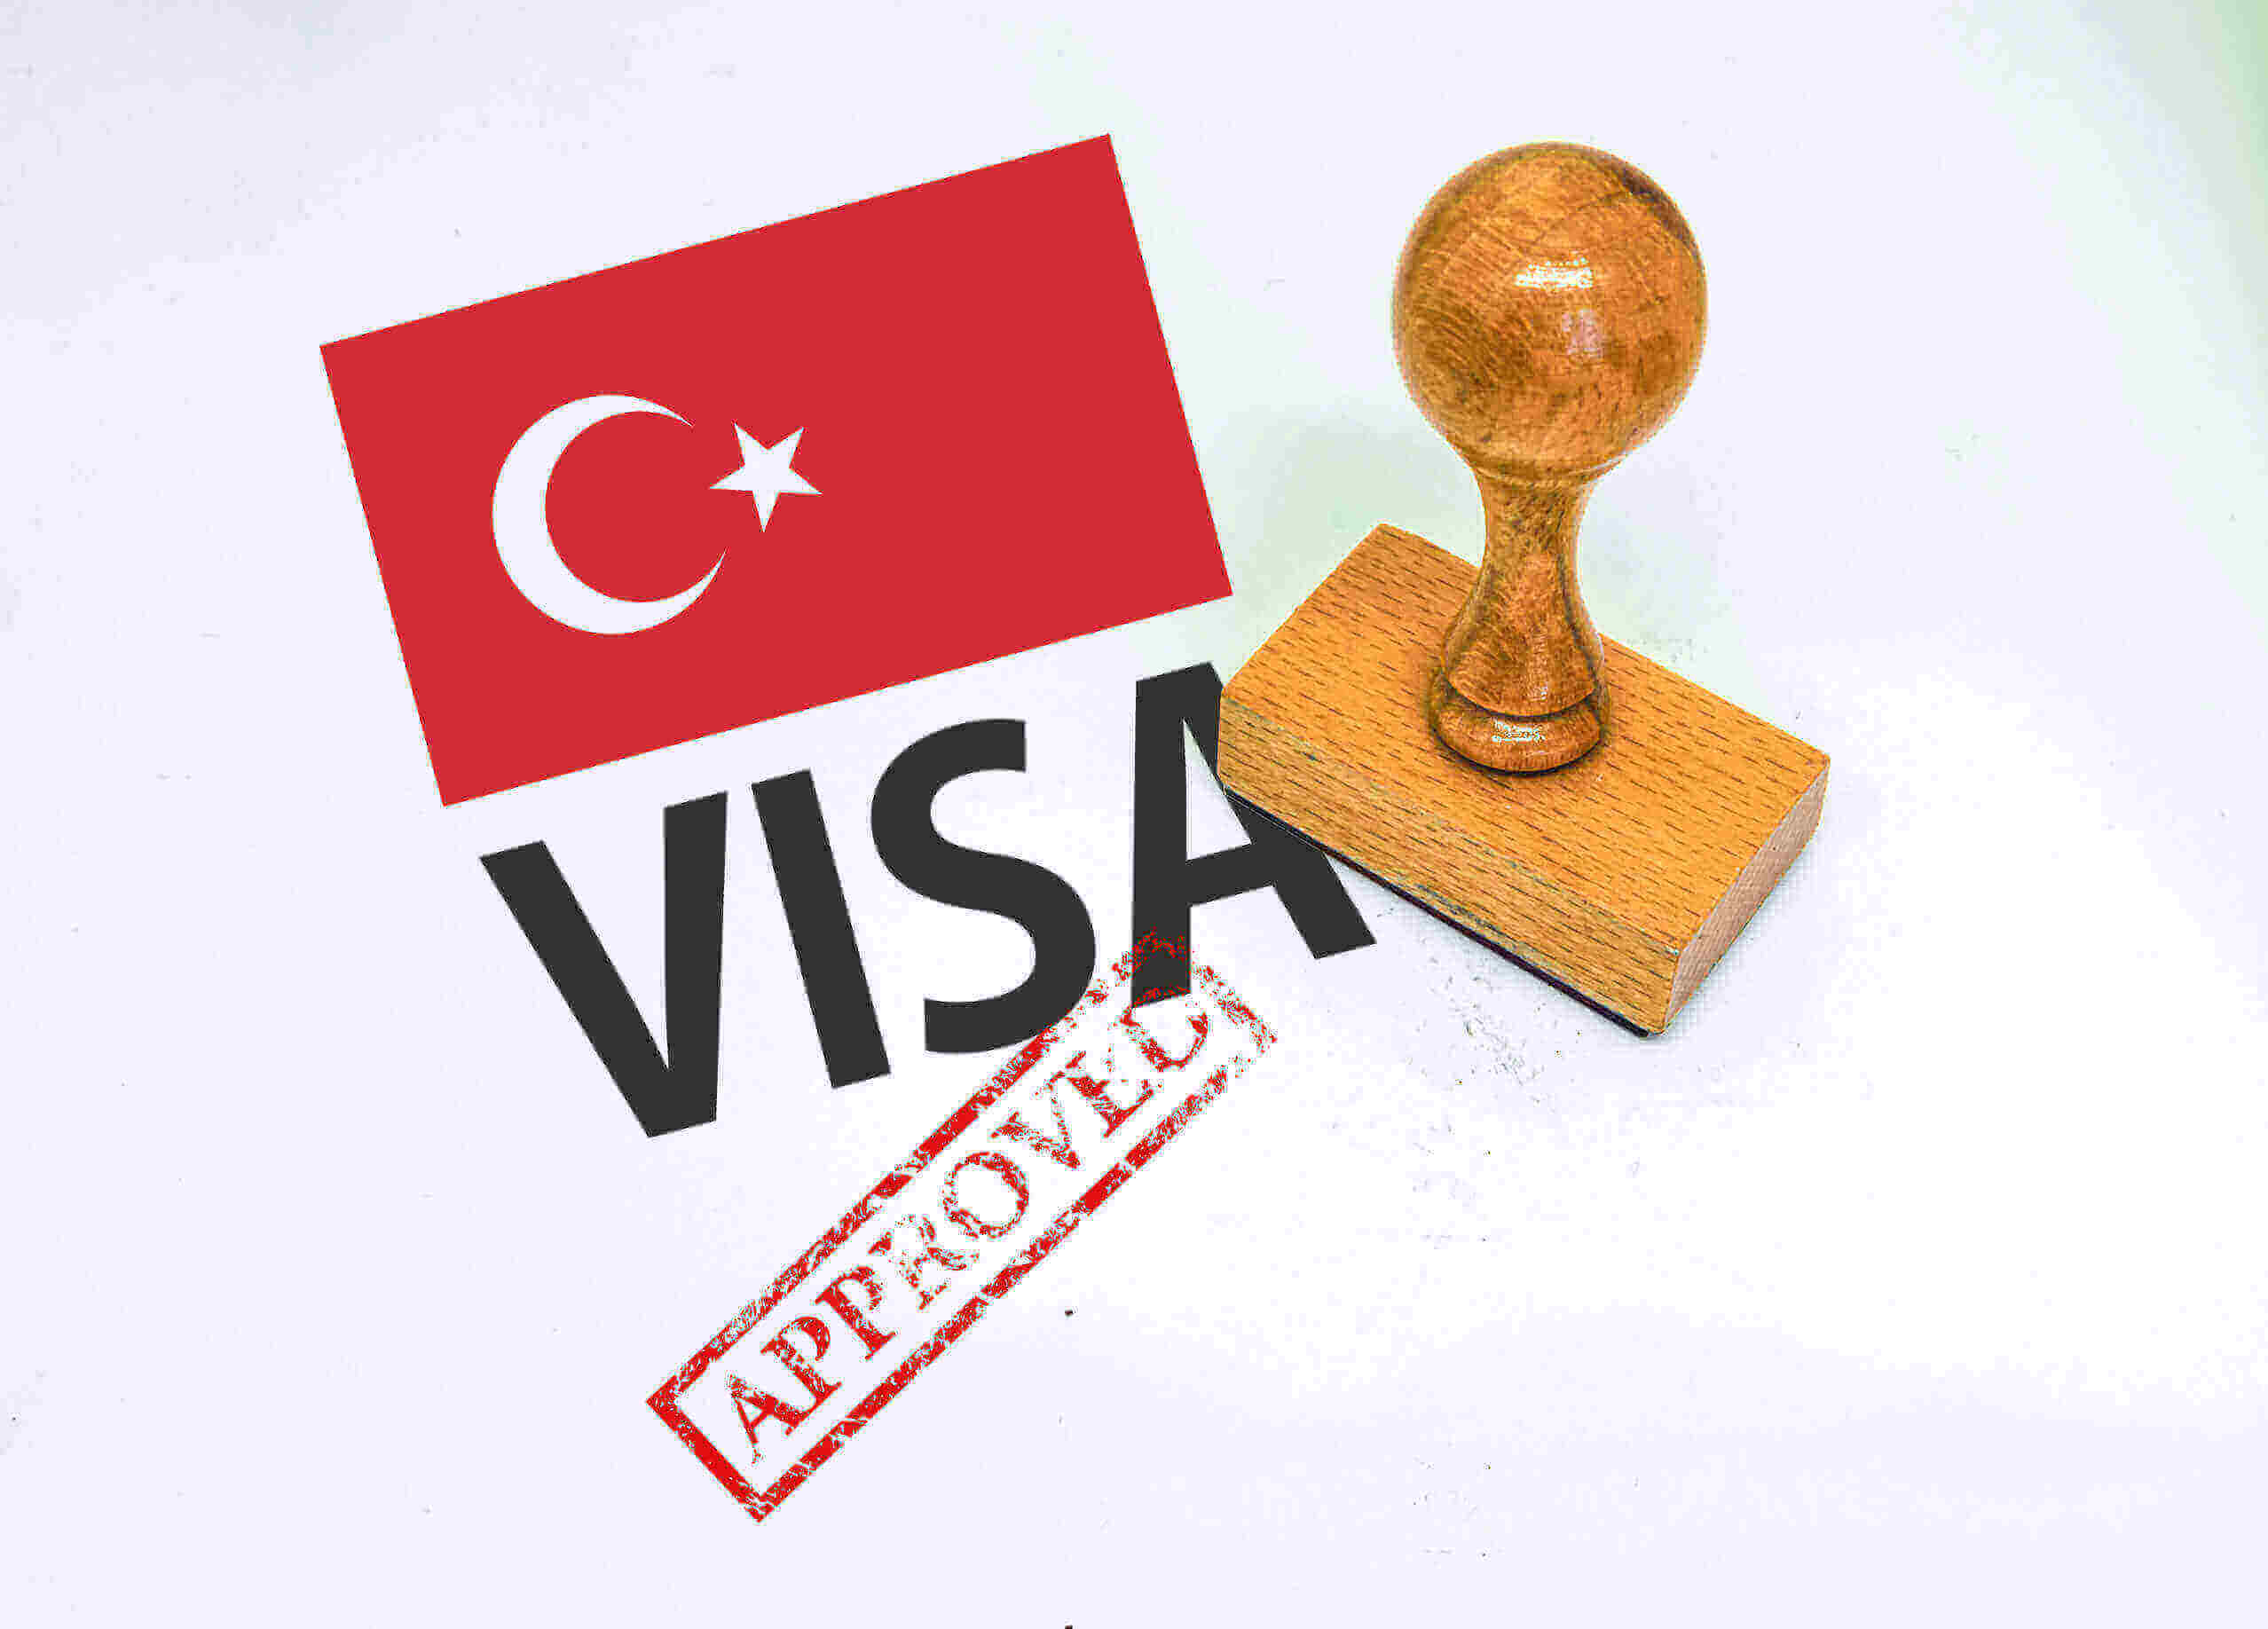 turkey travel visa requirements